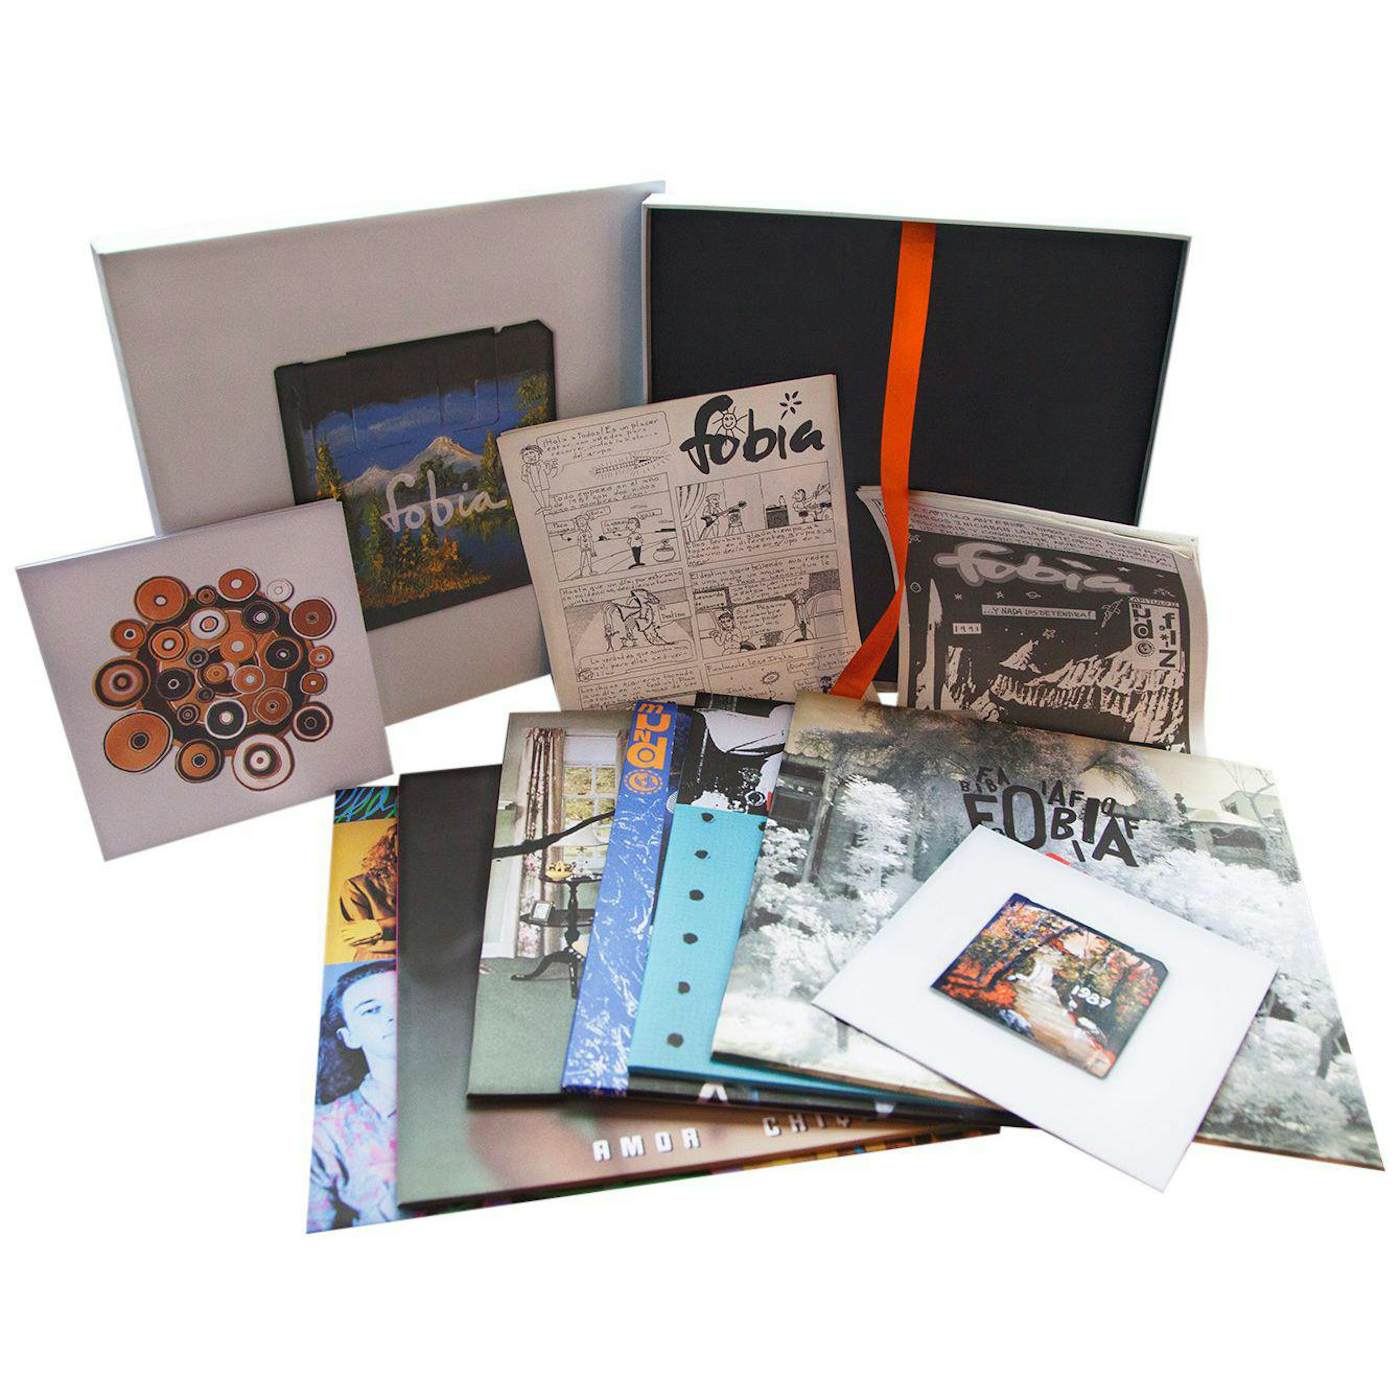 Fobia Complete Albums 6LP Boxset Vinyl Record